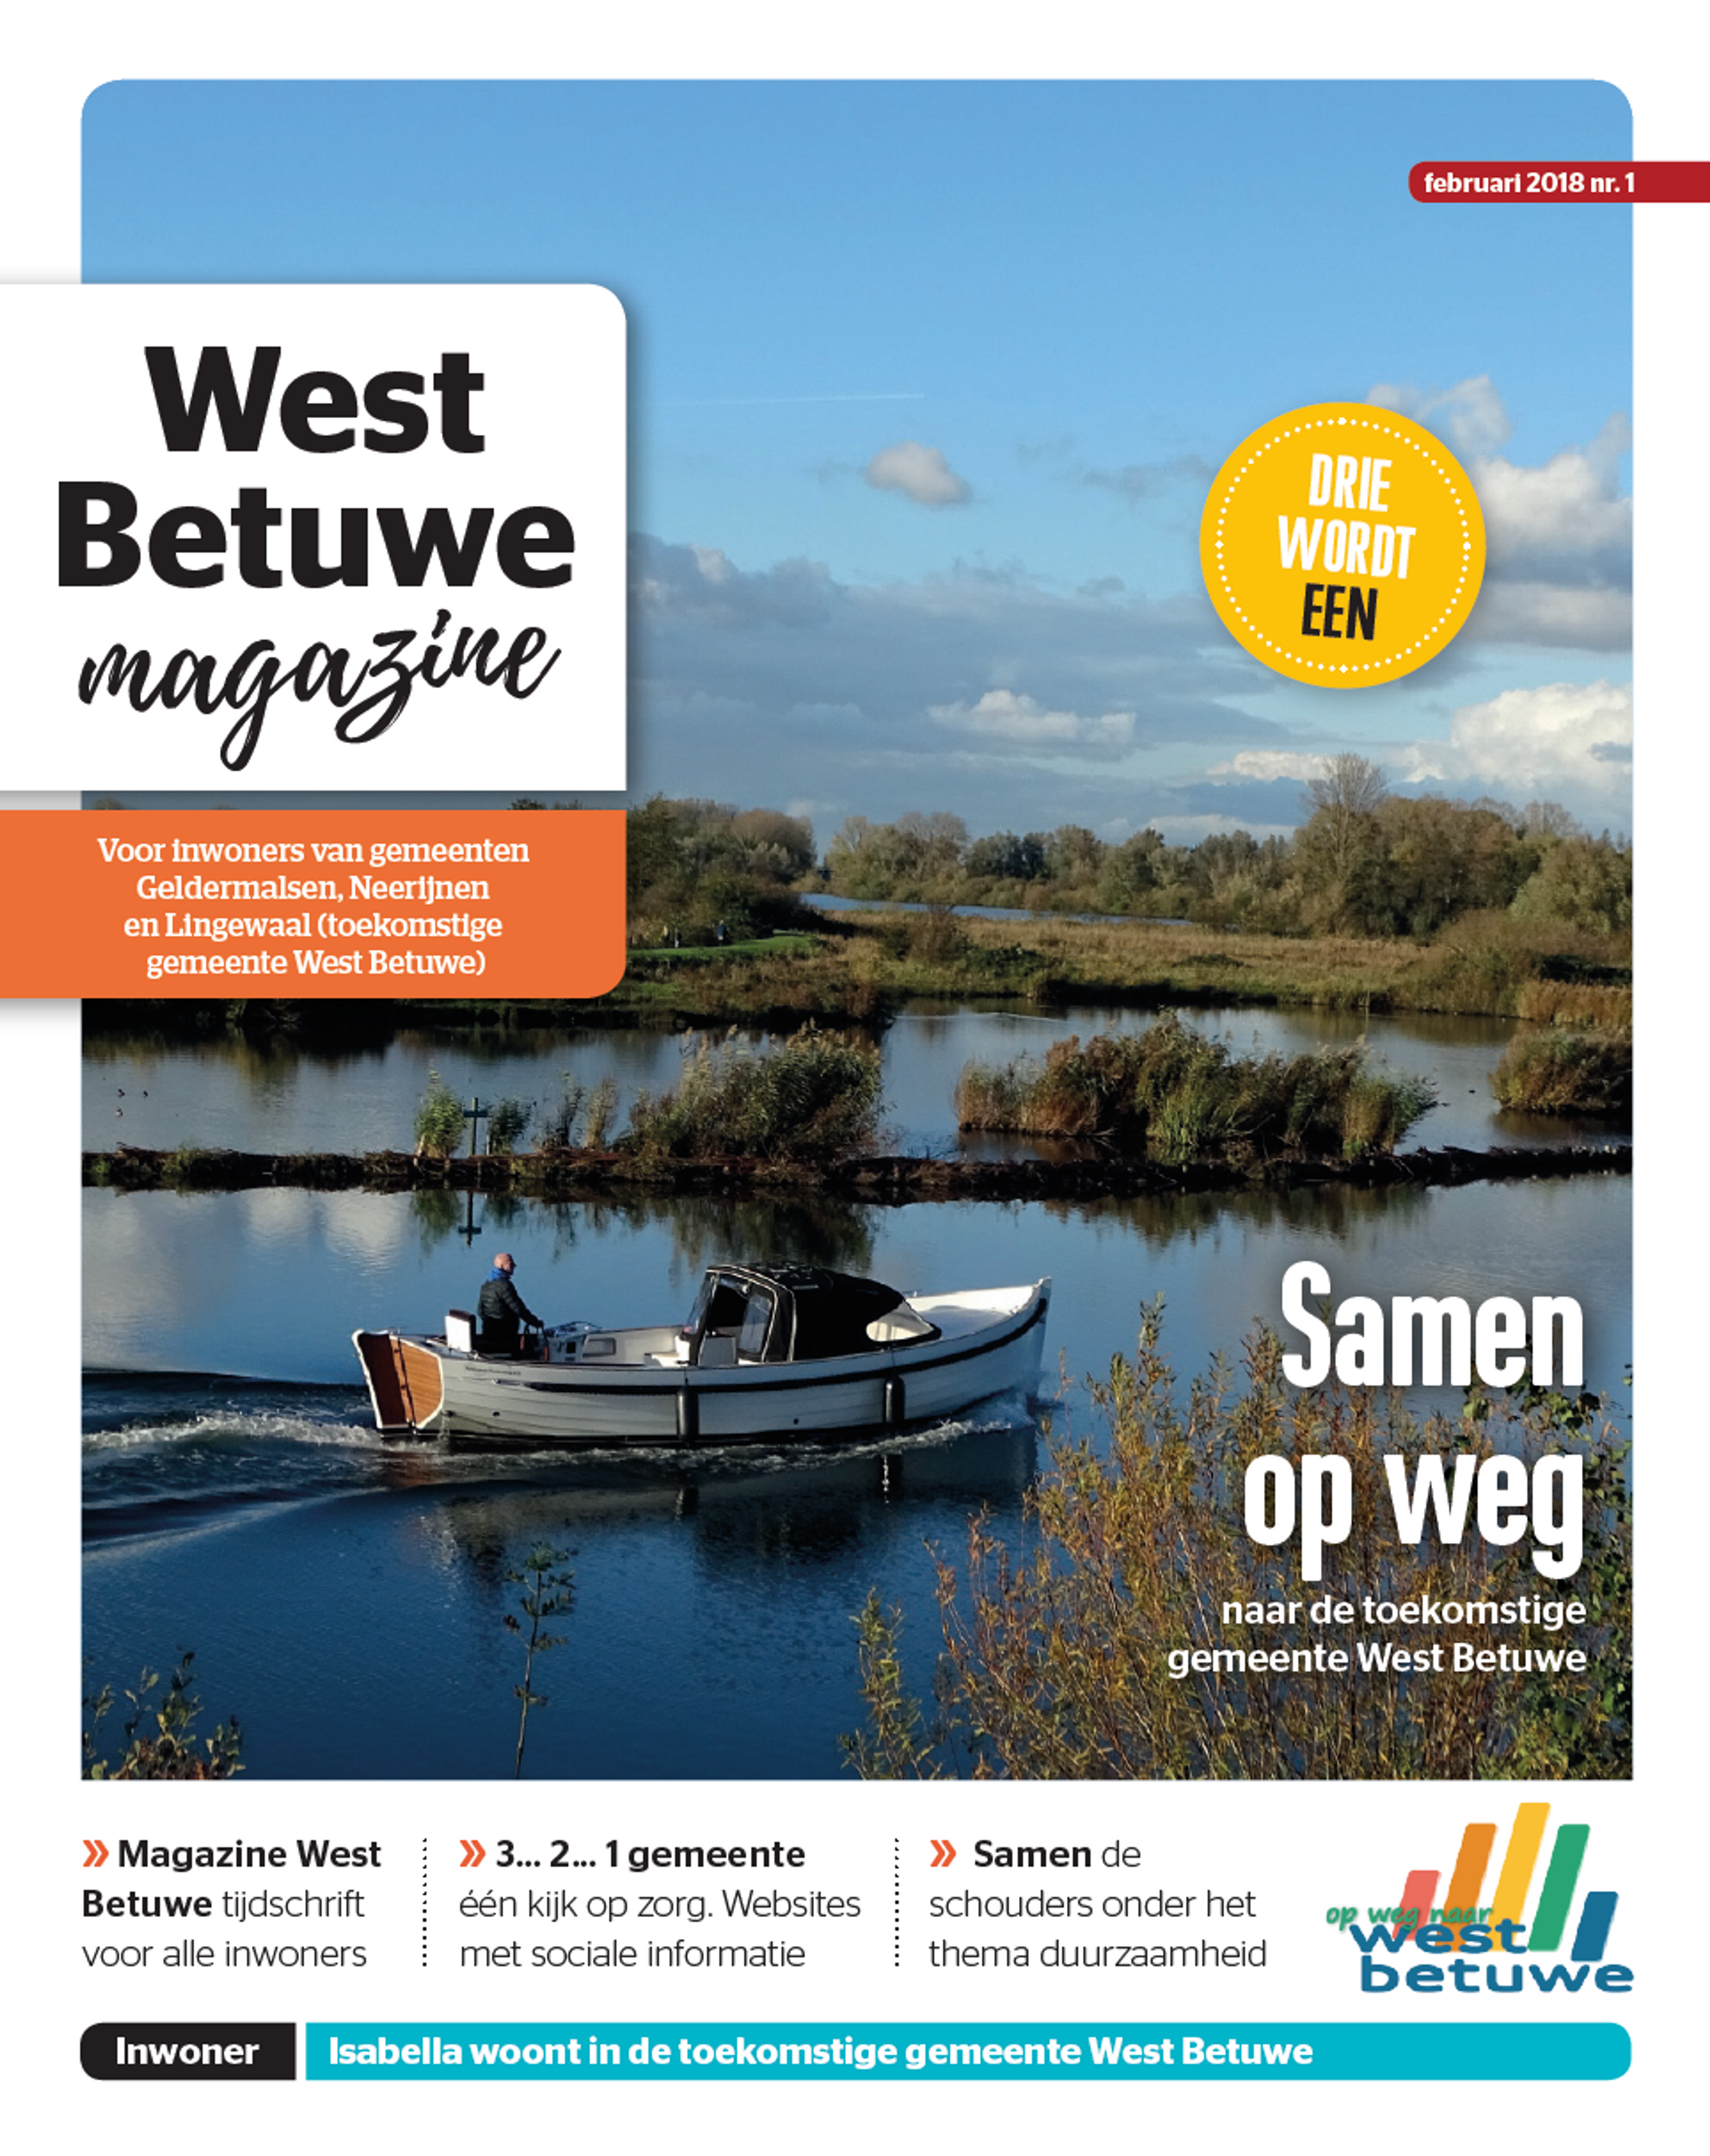 West Betuwe magazine